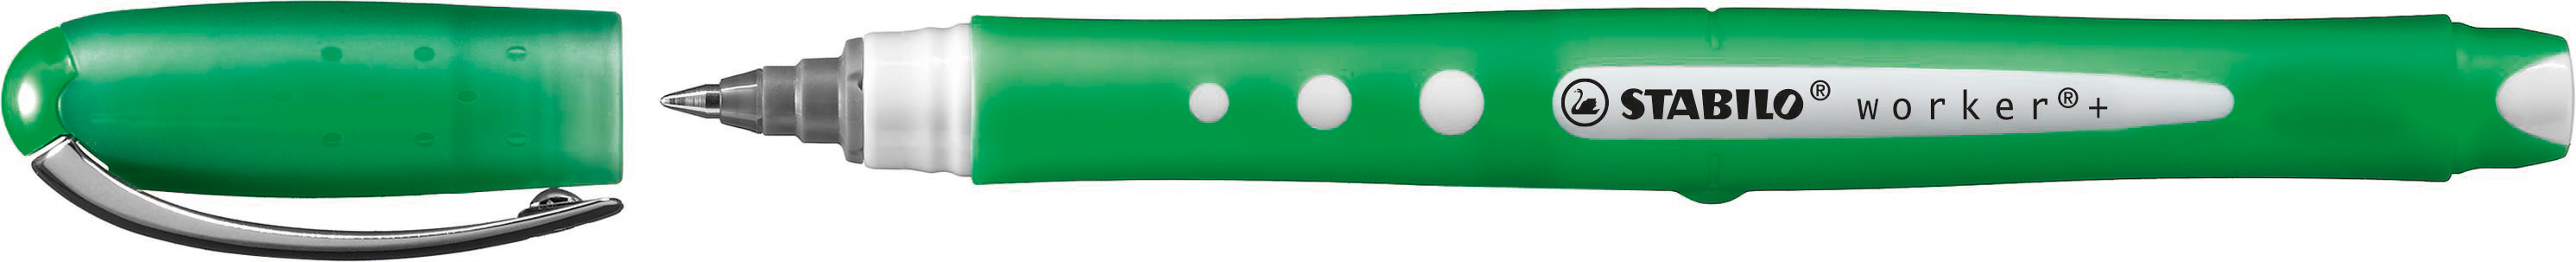 STABILO worker colorful roller 0.5mm 2019/36 vert vert